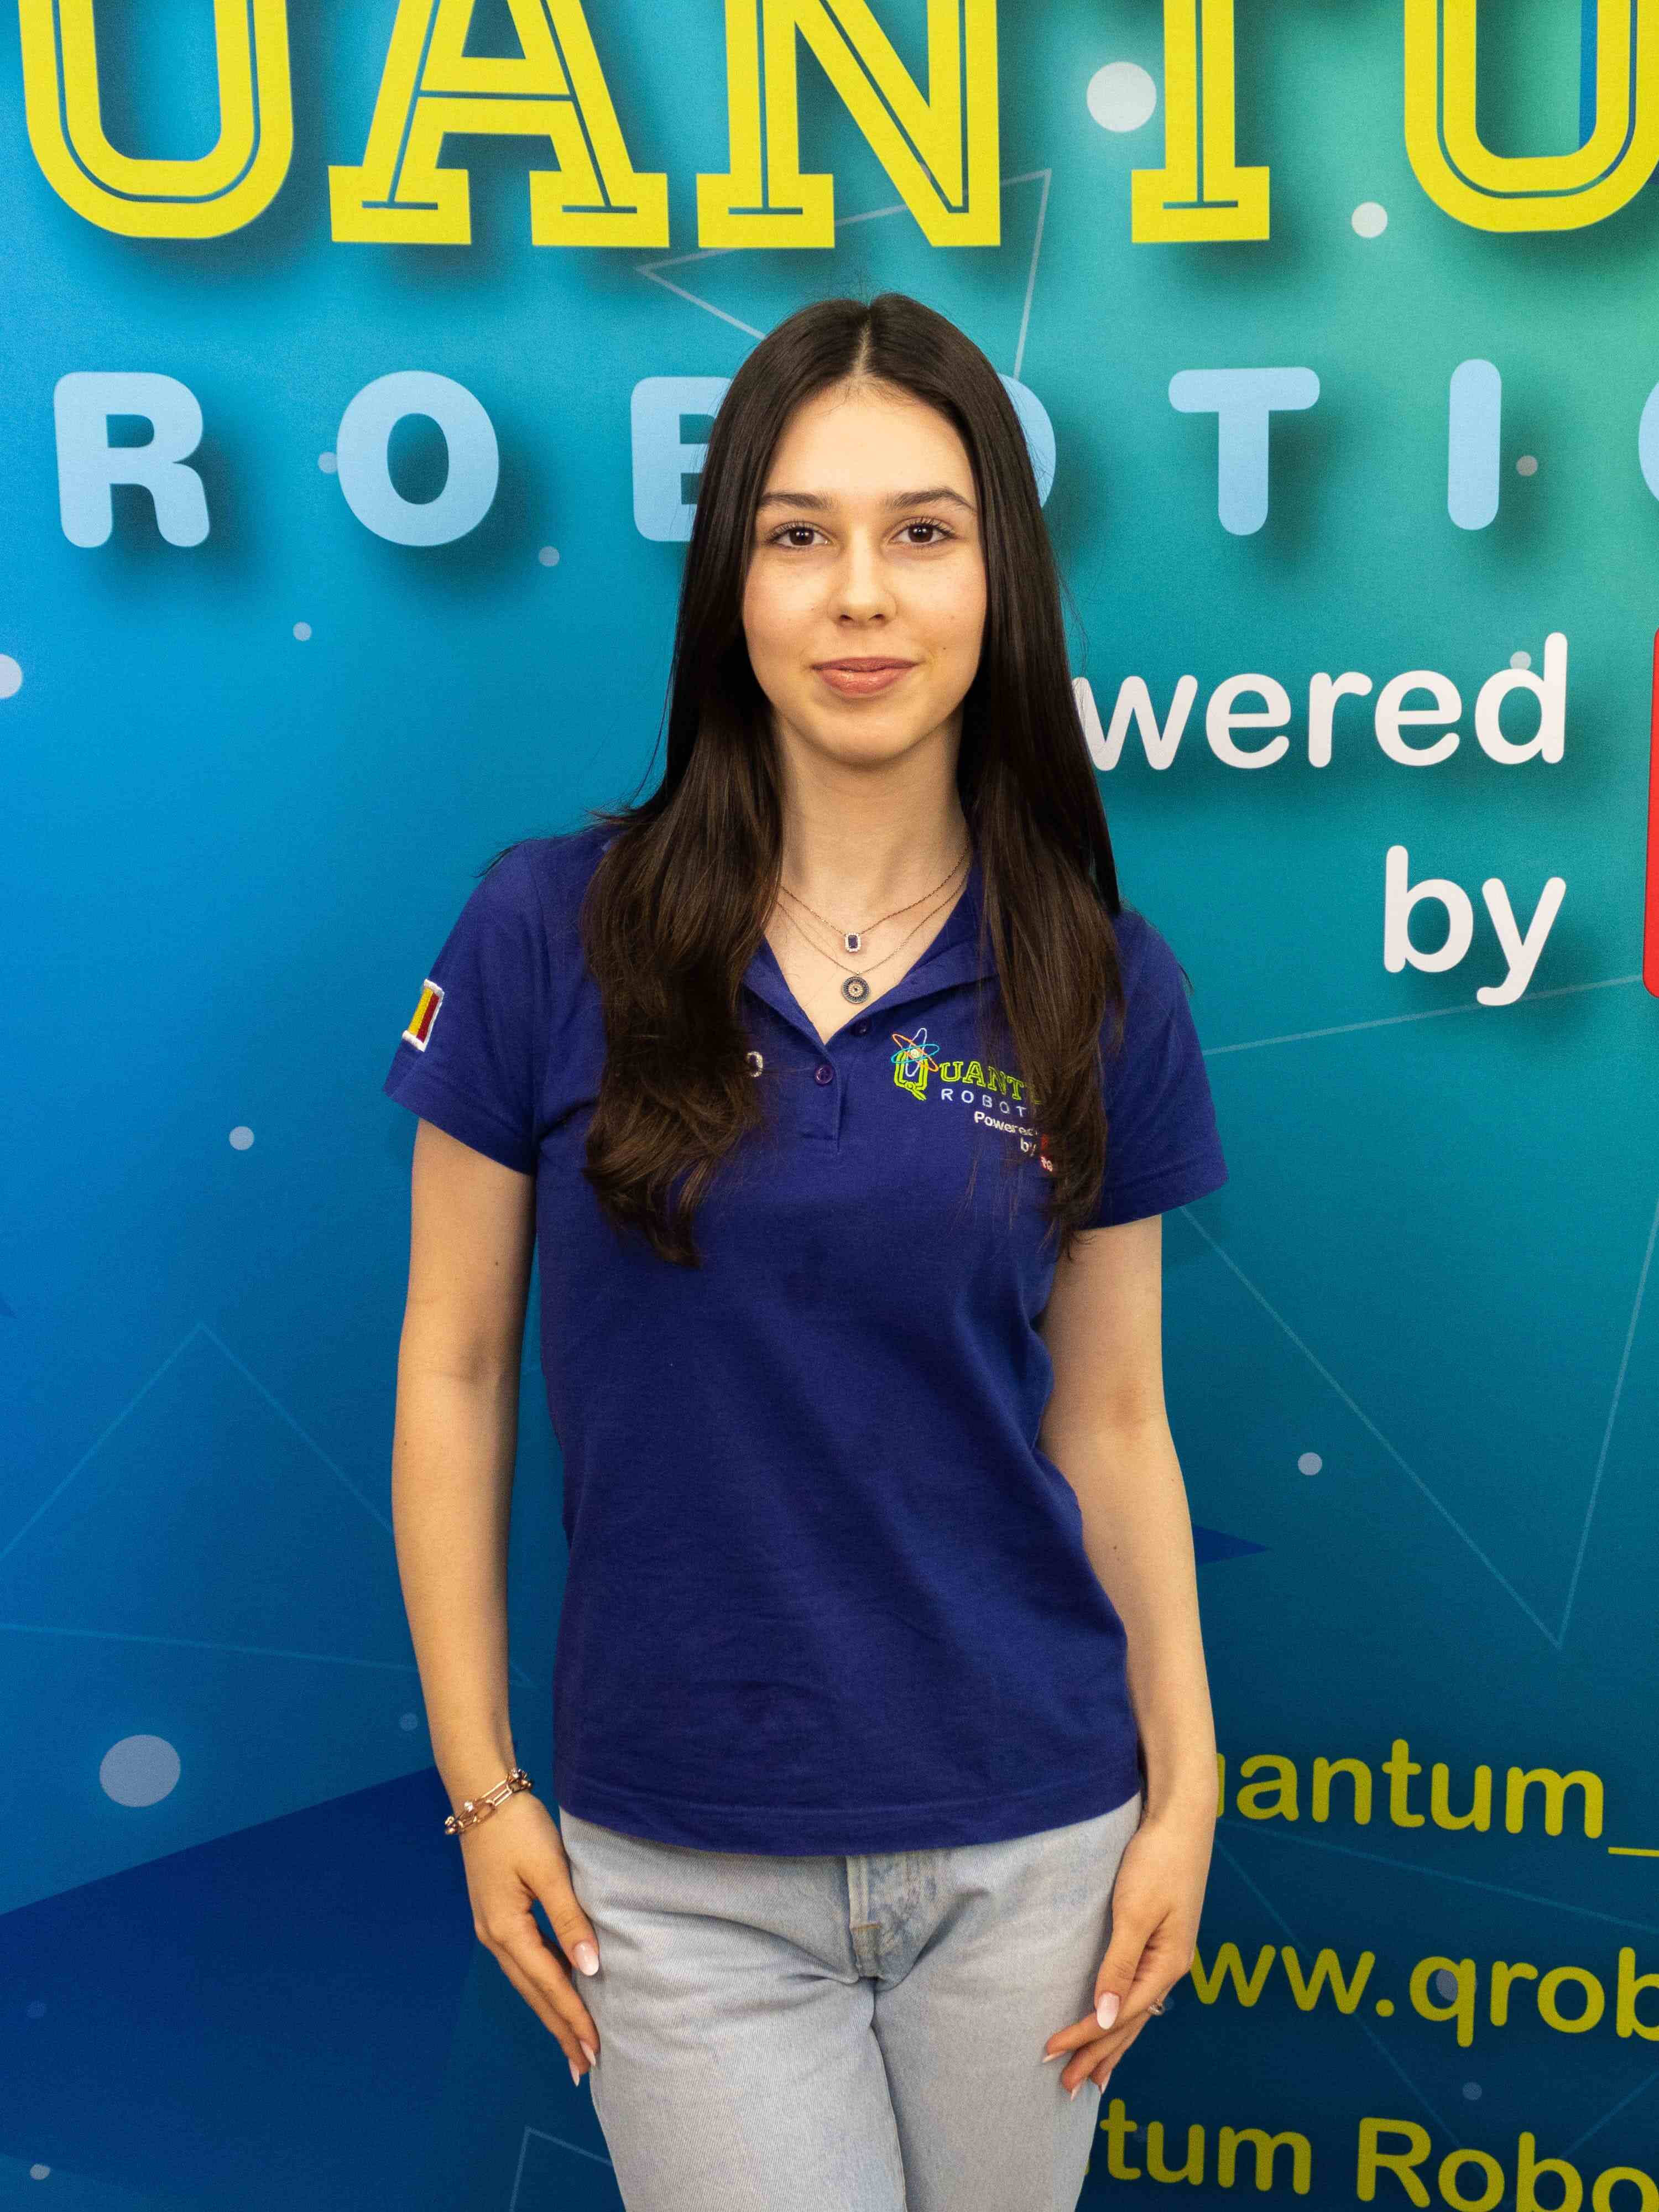 Quantum-Robotics-FTC-FIRST-competiton-team-members-Anca-Onita